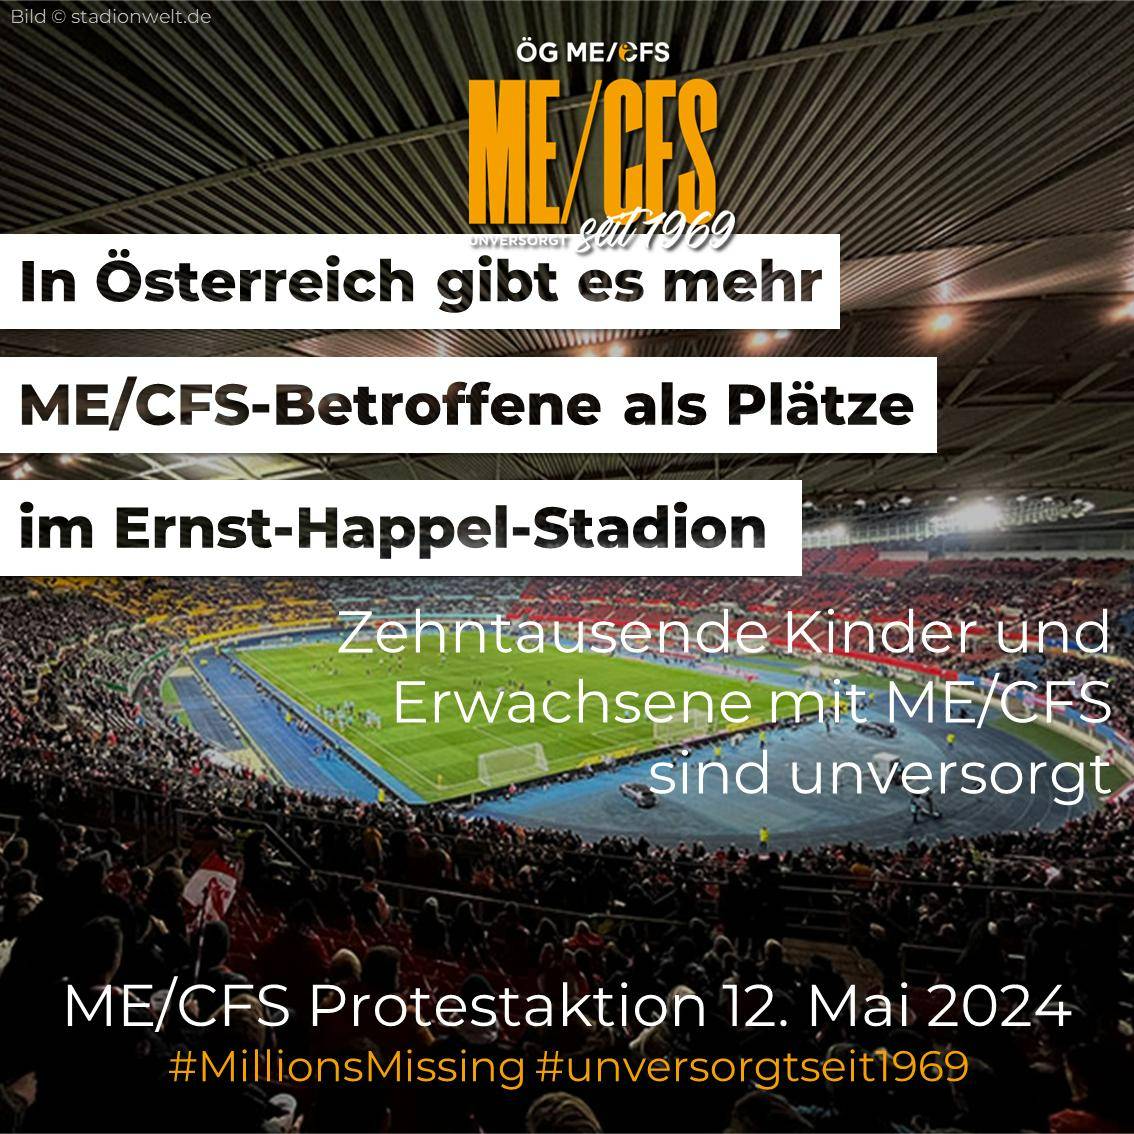 📣📢Protestaktion 12.Mai 📣📢 In Österreich gibt es mehr ME/CFS-Betroffene als Plätze im Ernst-Happel-Stadion! Zehntausende Kinder und Erwachsene mit #MECFS sind unversorgt. Schon vor der Pandemie waren zwischen 26.000 und 80.000 Menschen betroffen. 1/4